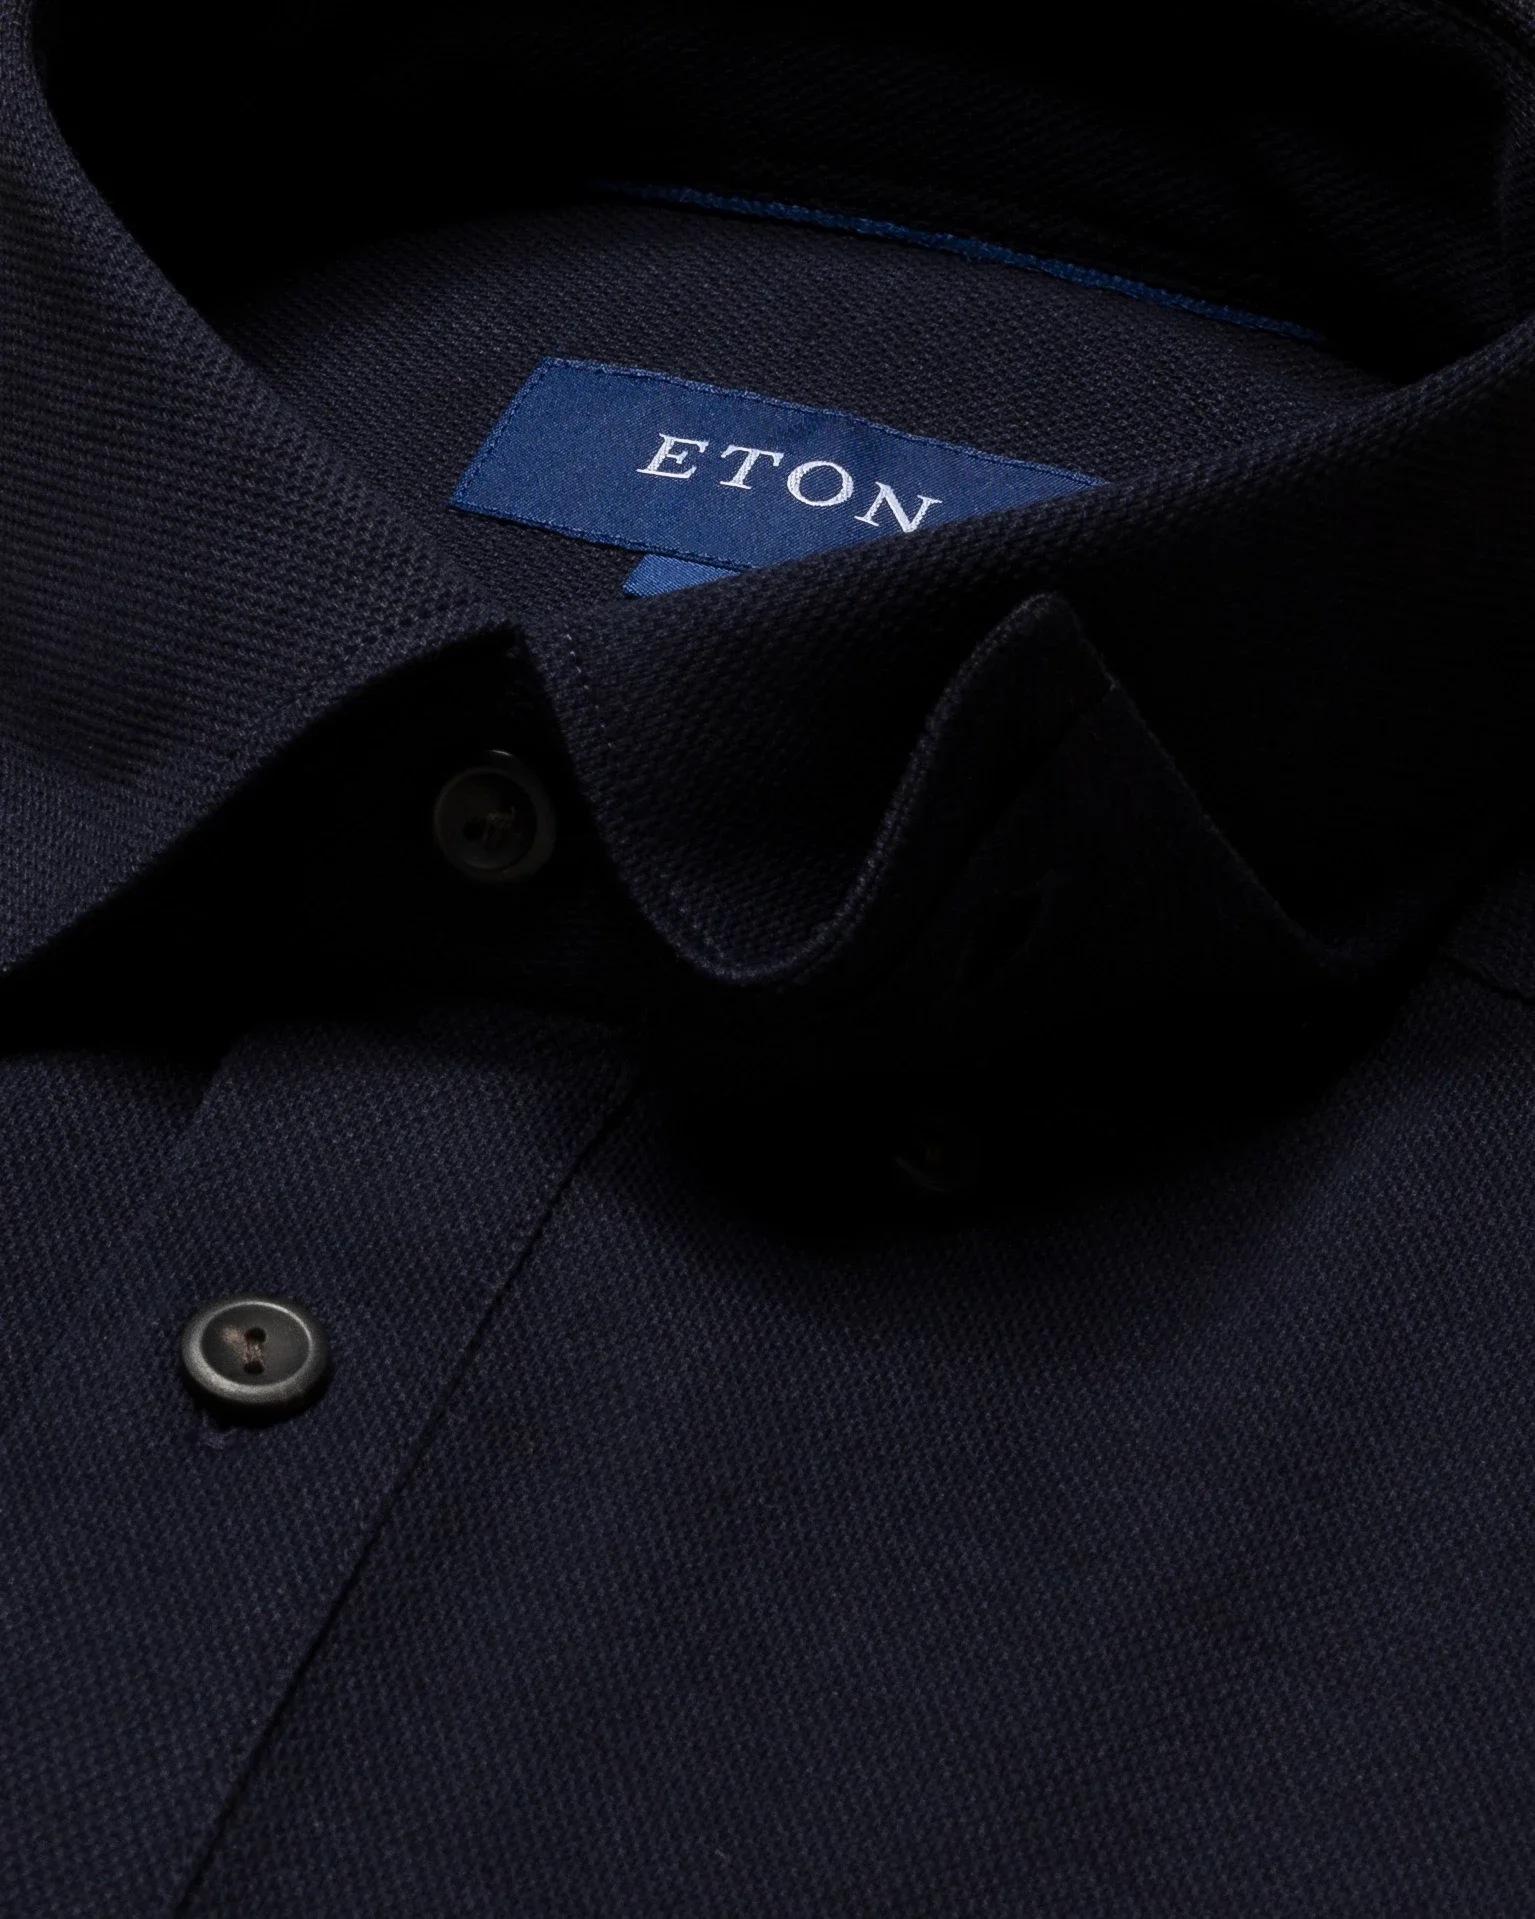 Eton - navy blue pique button under